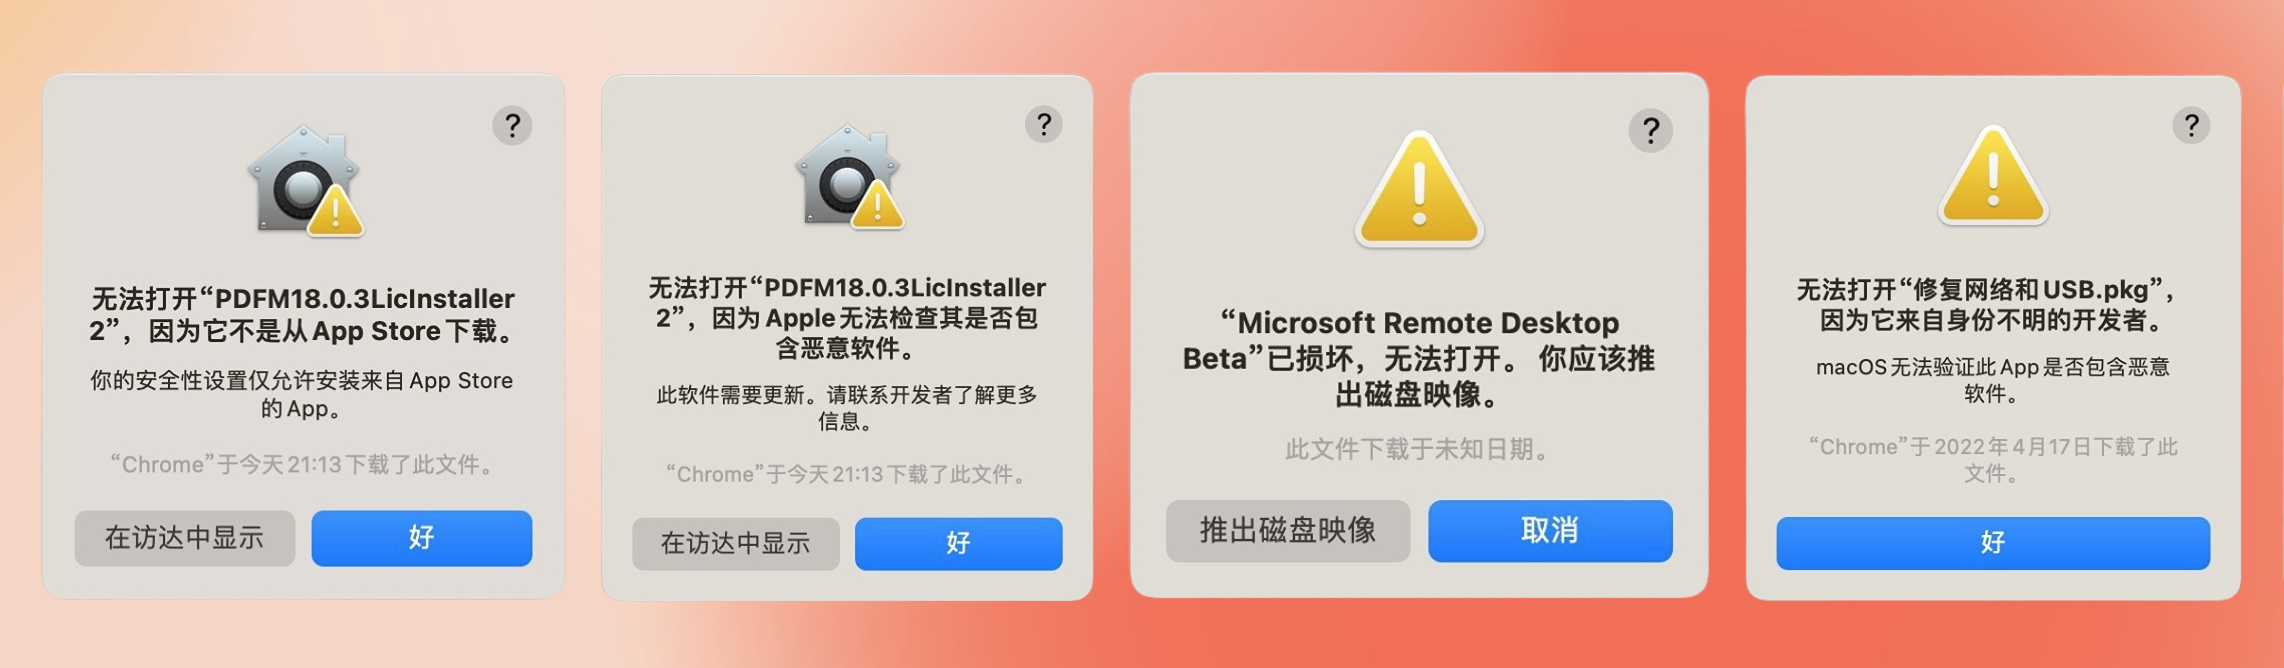 Mac安装软件常见问题解决（新手必看）提示“无法确认开发者身份”、“已损坏”问题